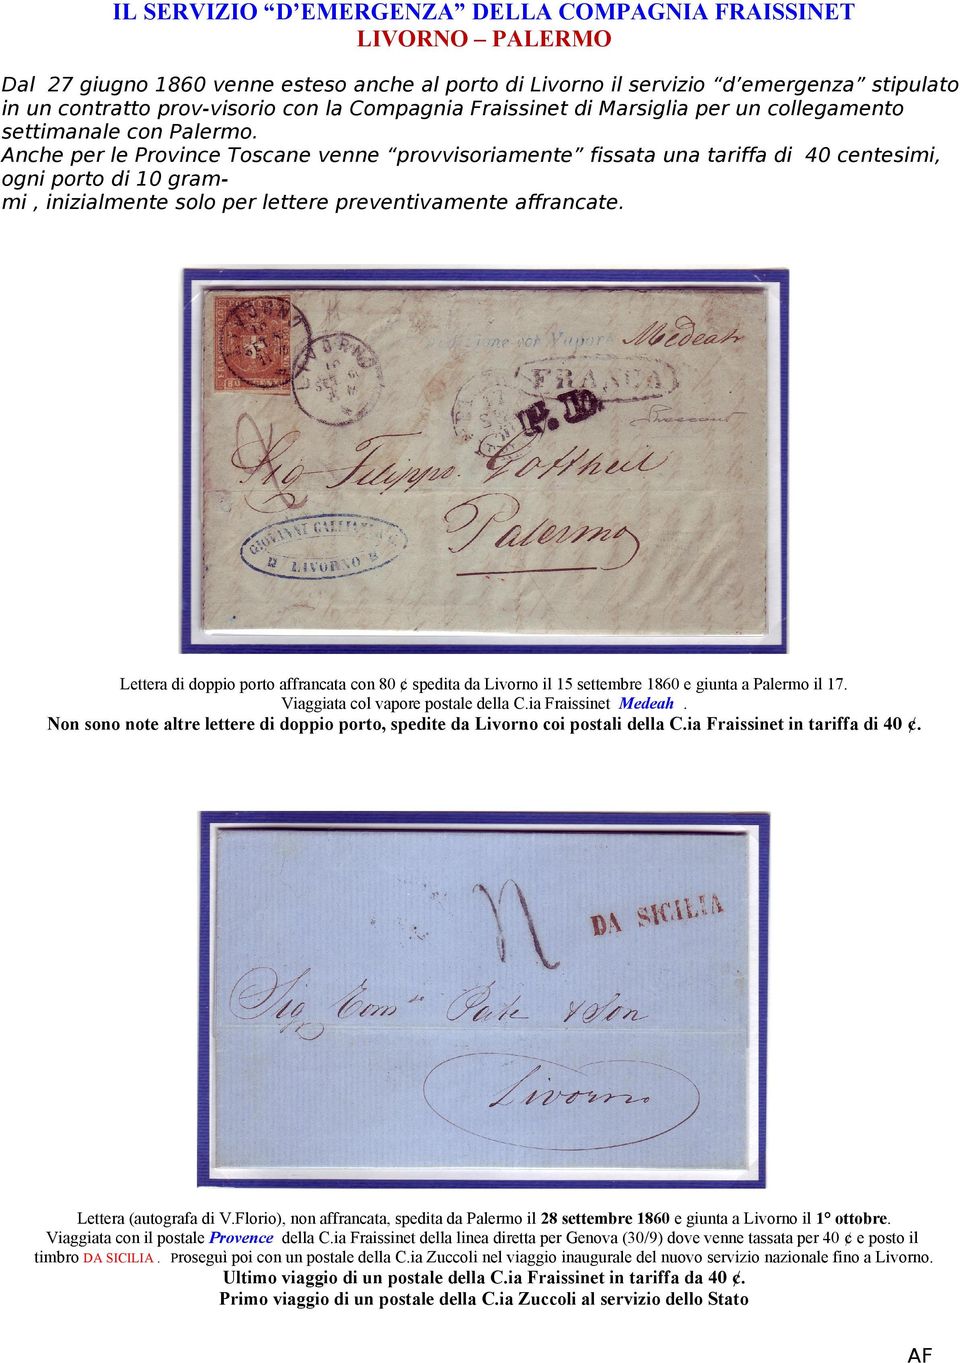 Lettera di doppio porto affrancata con 80 spedita da Livorno il 15 settembre 1860 e giunta a Palermo il 17. Viaggiata col vapore postale della C.ia Fraissinet Medeah.